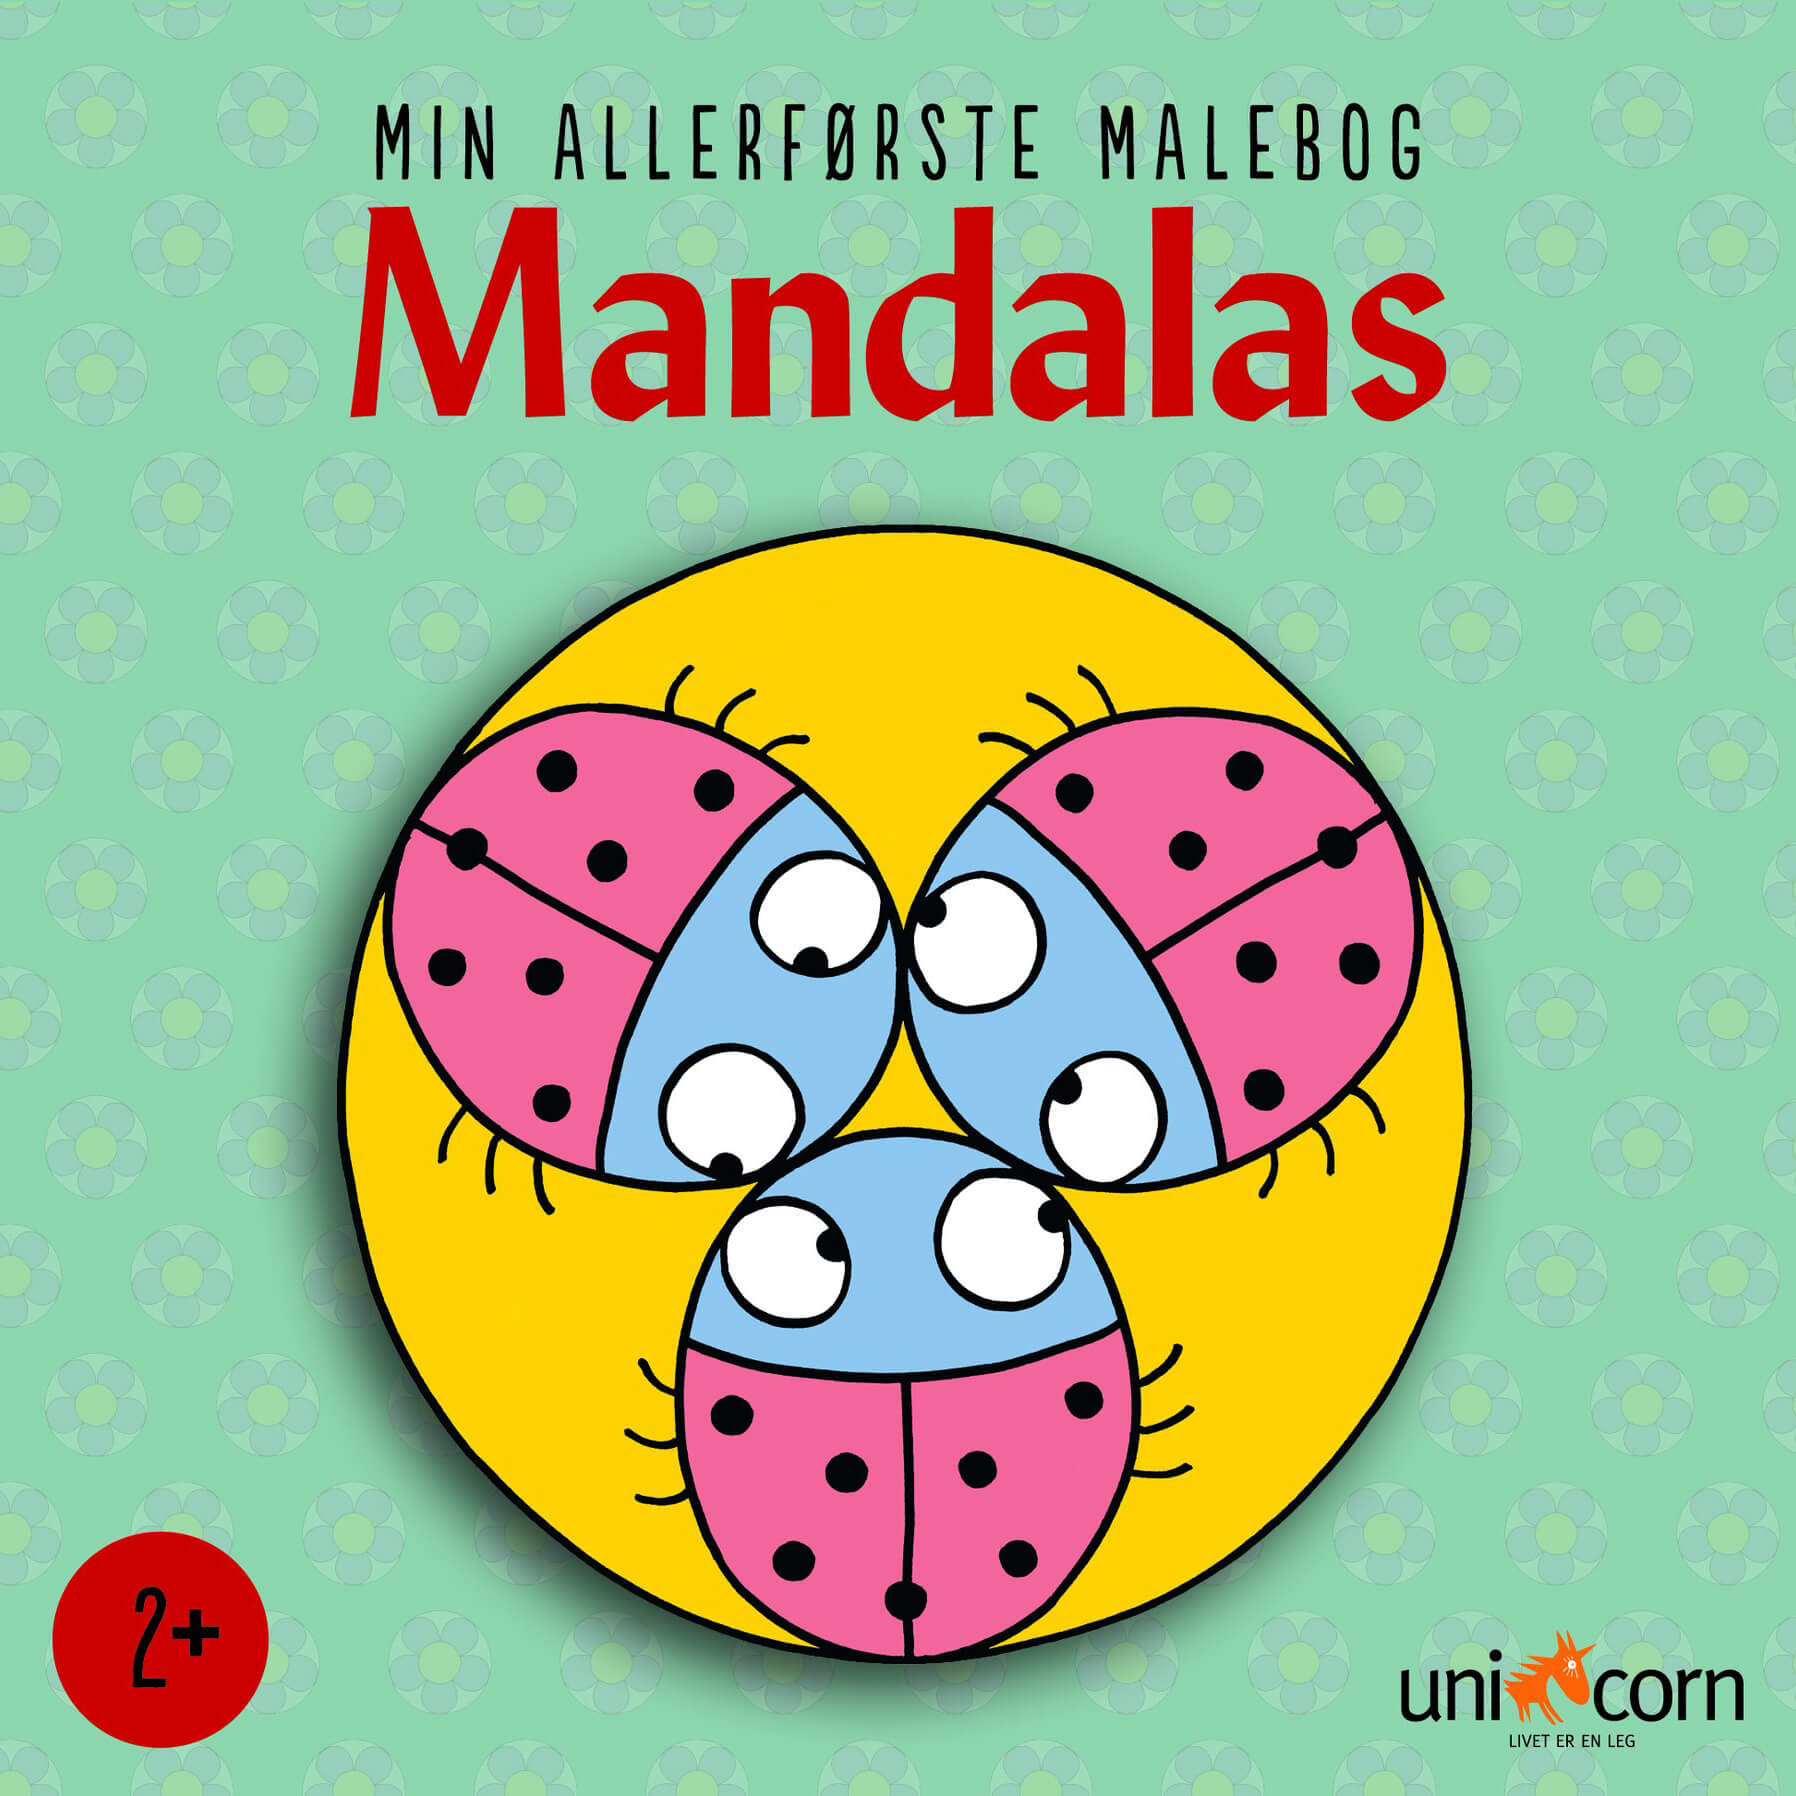 Mandalas - Min allerførste Mandalas Malebog